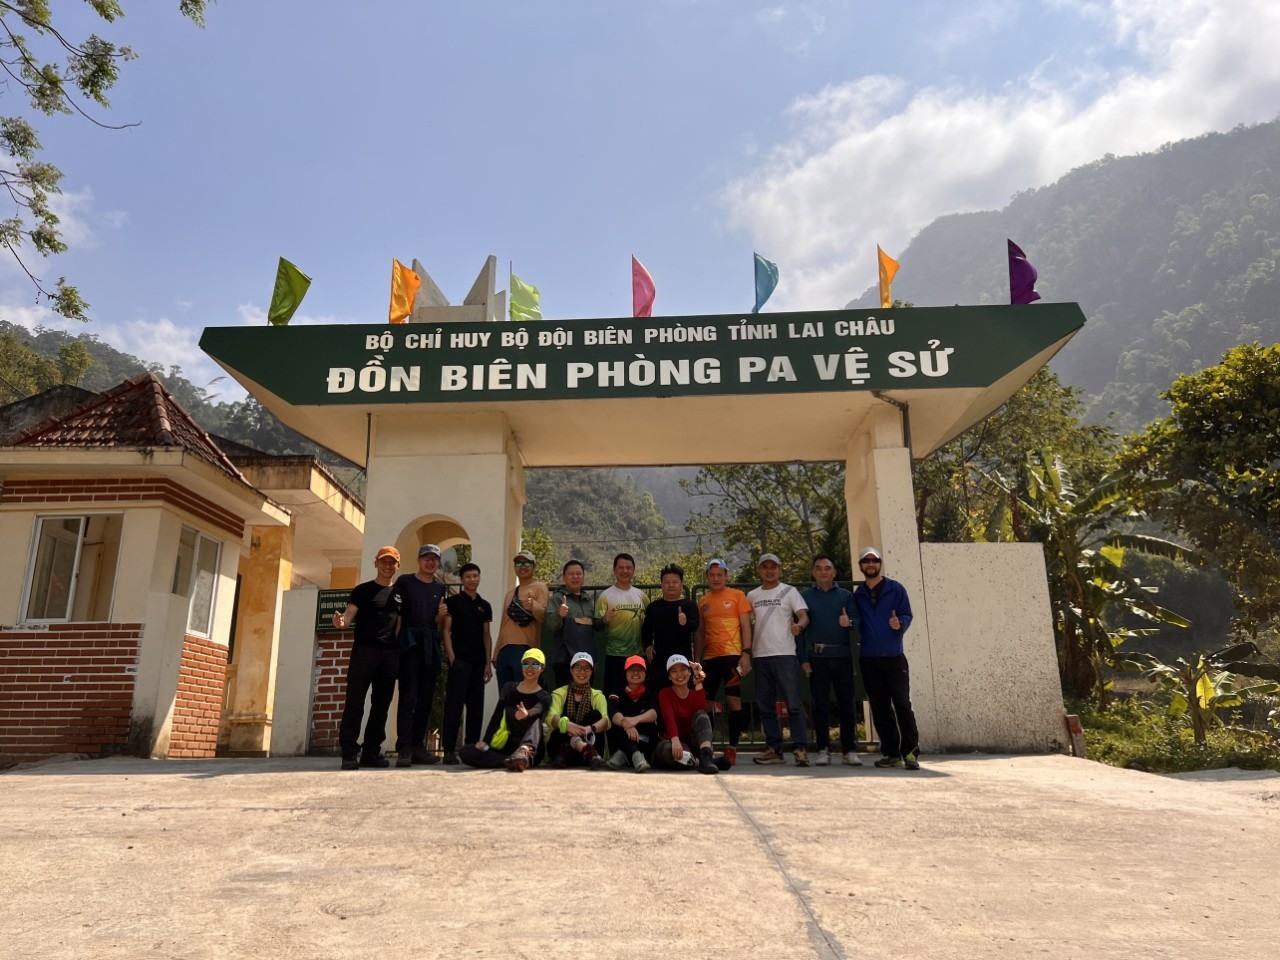 Là một địa danh nằm ở vùng sâu, vùng xa nhất tỉnh Lai Châu, trước khi chinh phục đỉnh Pu Si Lung du khách cần đăng ký với Đồn Biên Phòng Pa Vệ Sử để đảm bảo an toàn cho chuyến đi và nguyên tắc 5K.